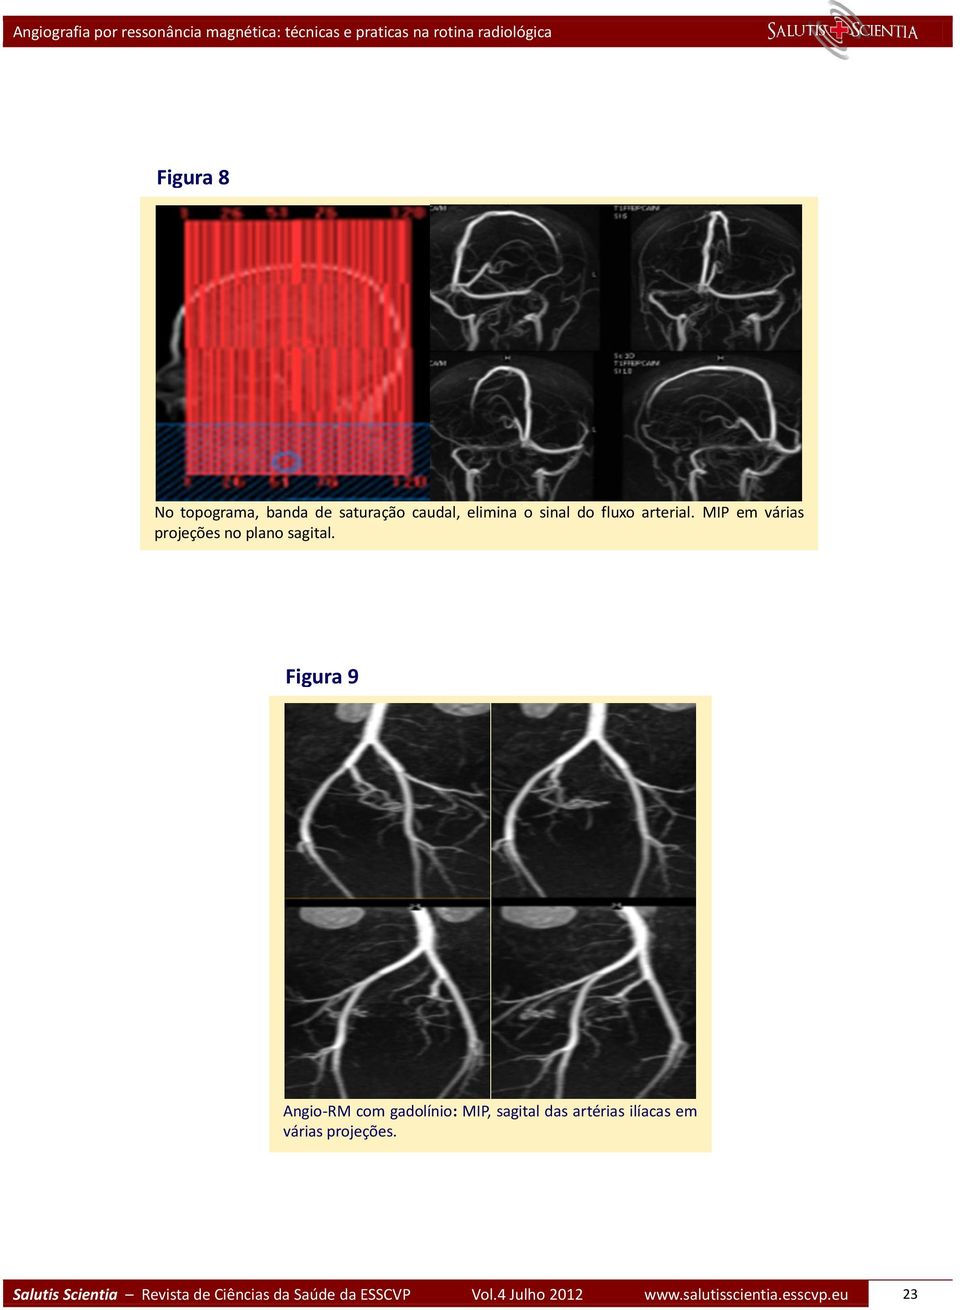 Figura 9 Angio-RM com gadolínio: MIP, sagital das artérias ilíacas em várias